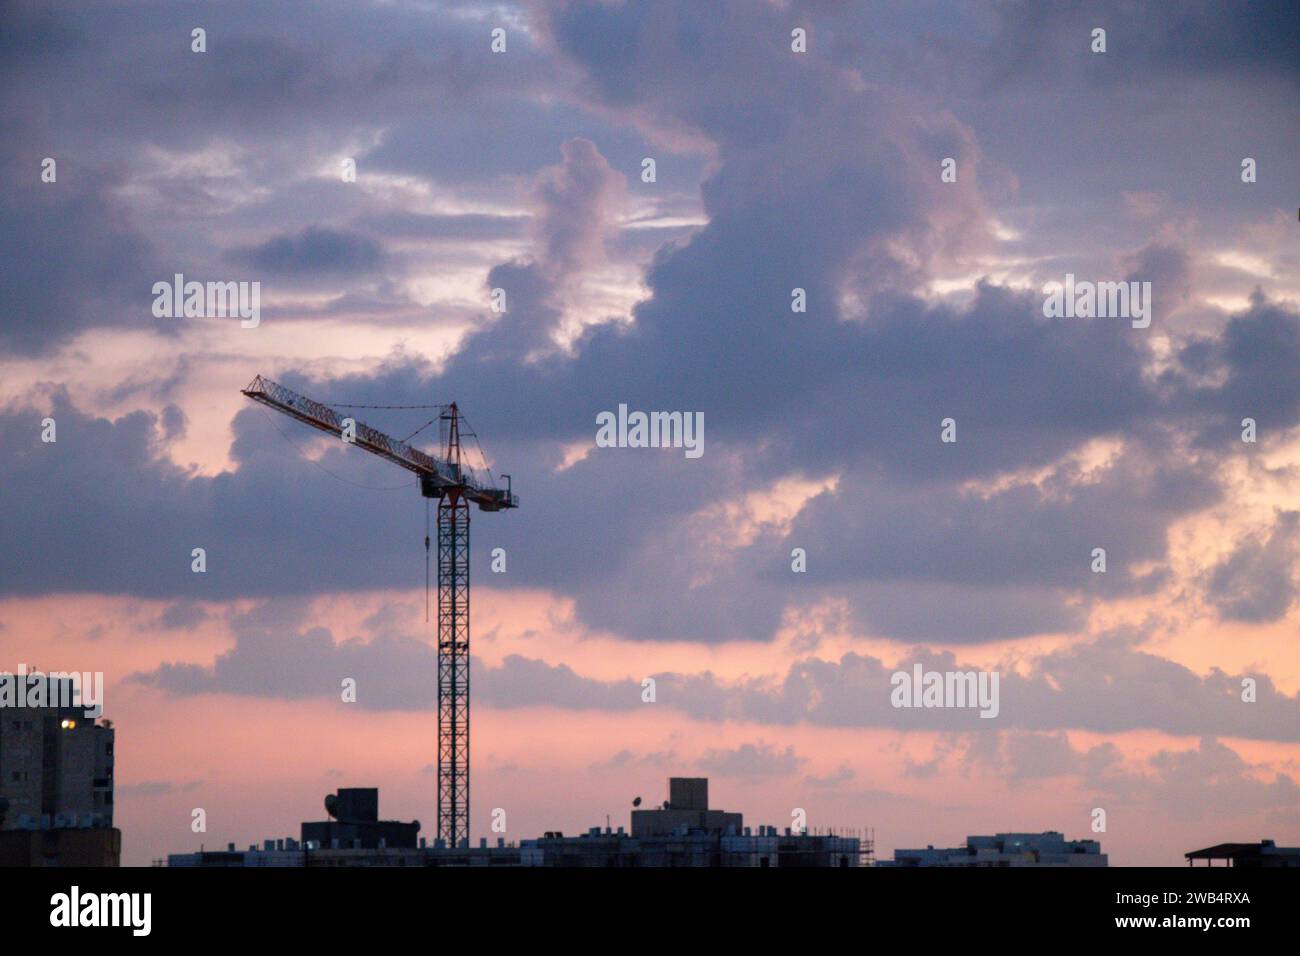 Ein Kranturm über dem Wohnbauprojekt. Bau von Eigentumswohnungen. Sonnenuntergang, goldene Stunde, mit Wolken Stockfoto